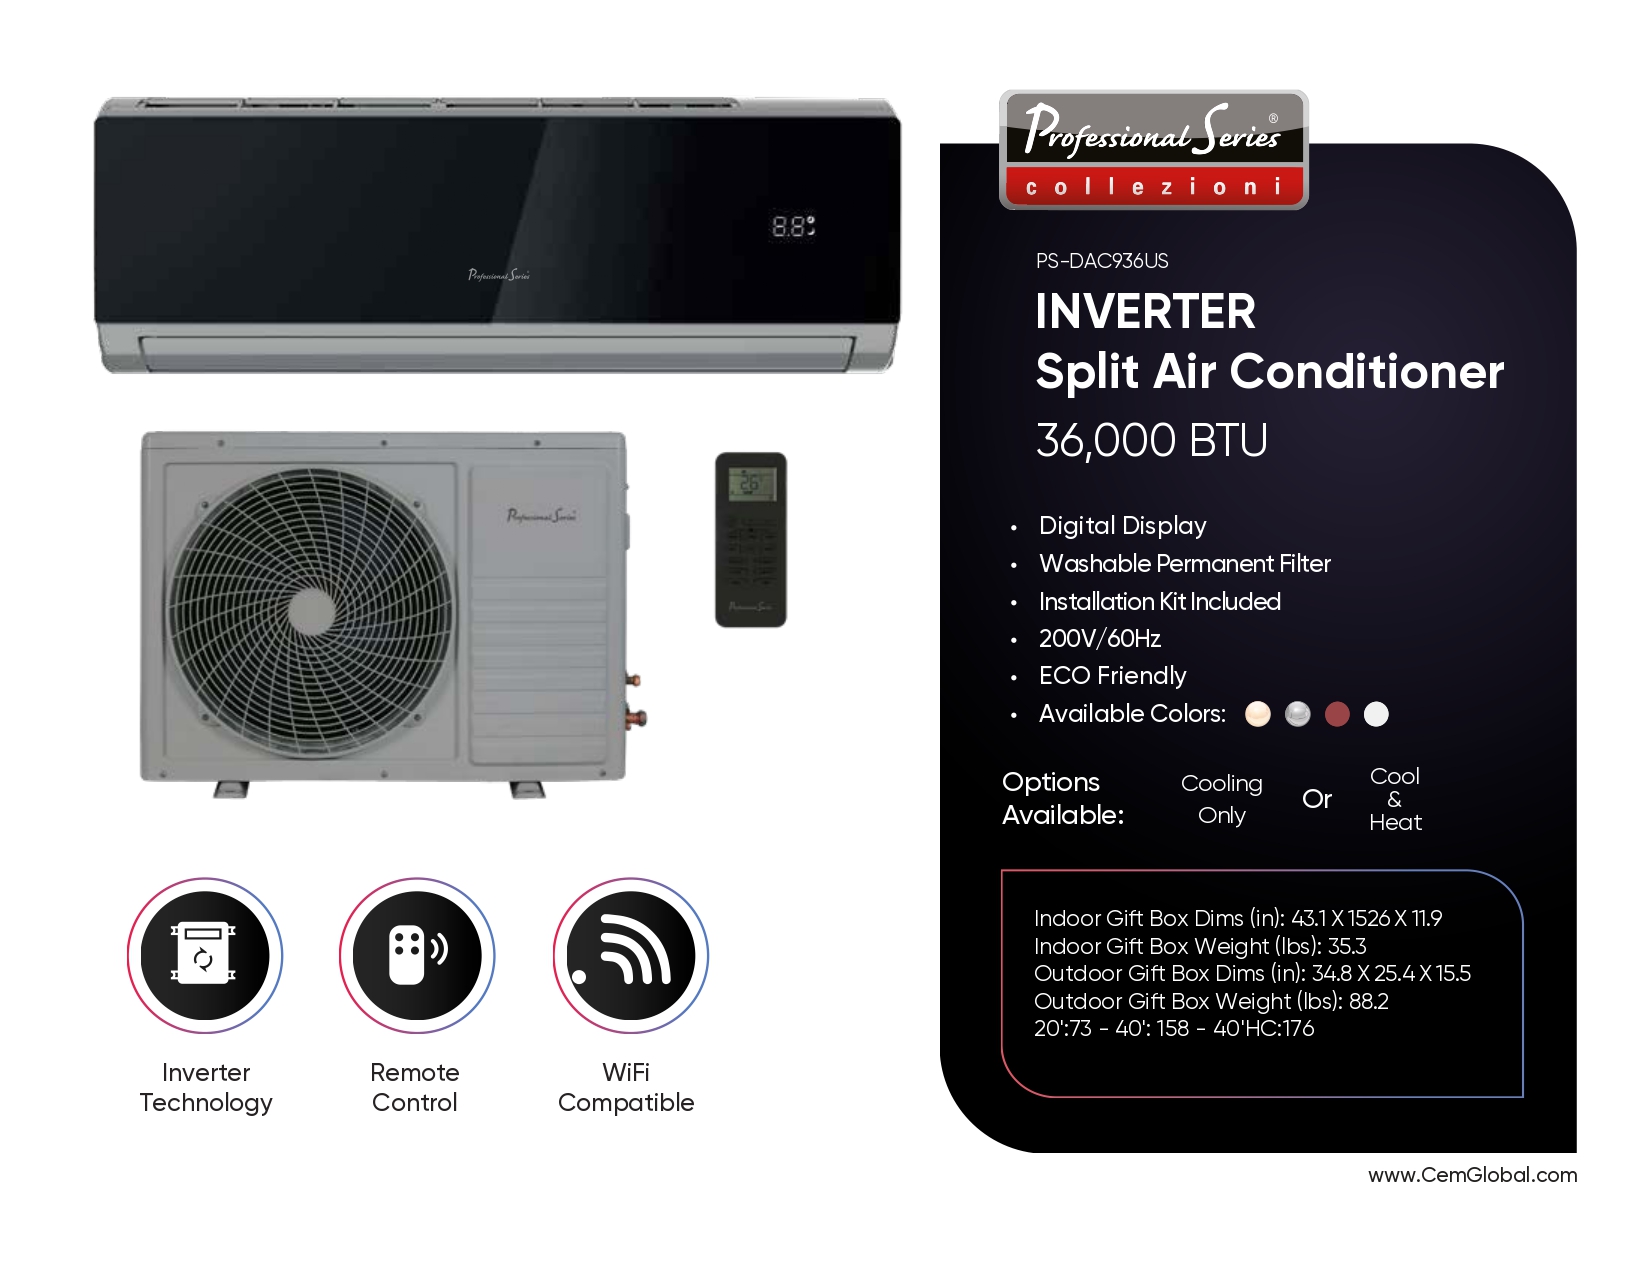 INVERTER Split Air Conditioner 36,000 BTU